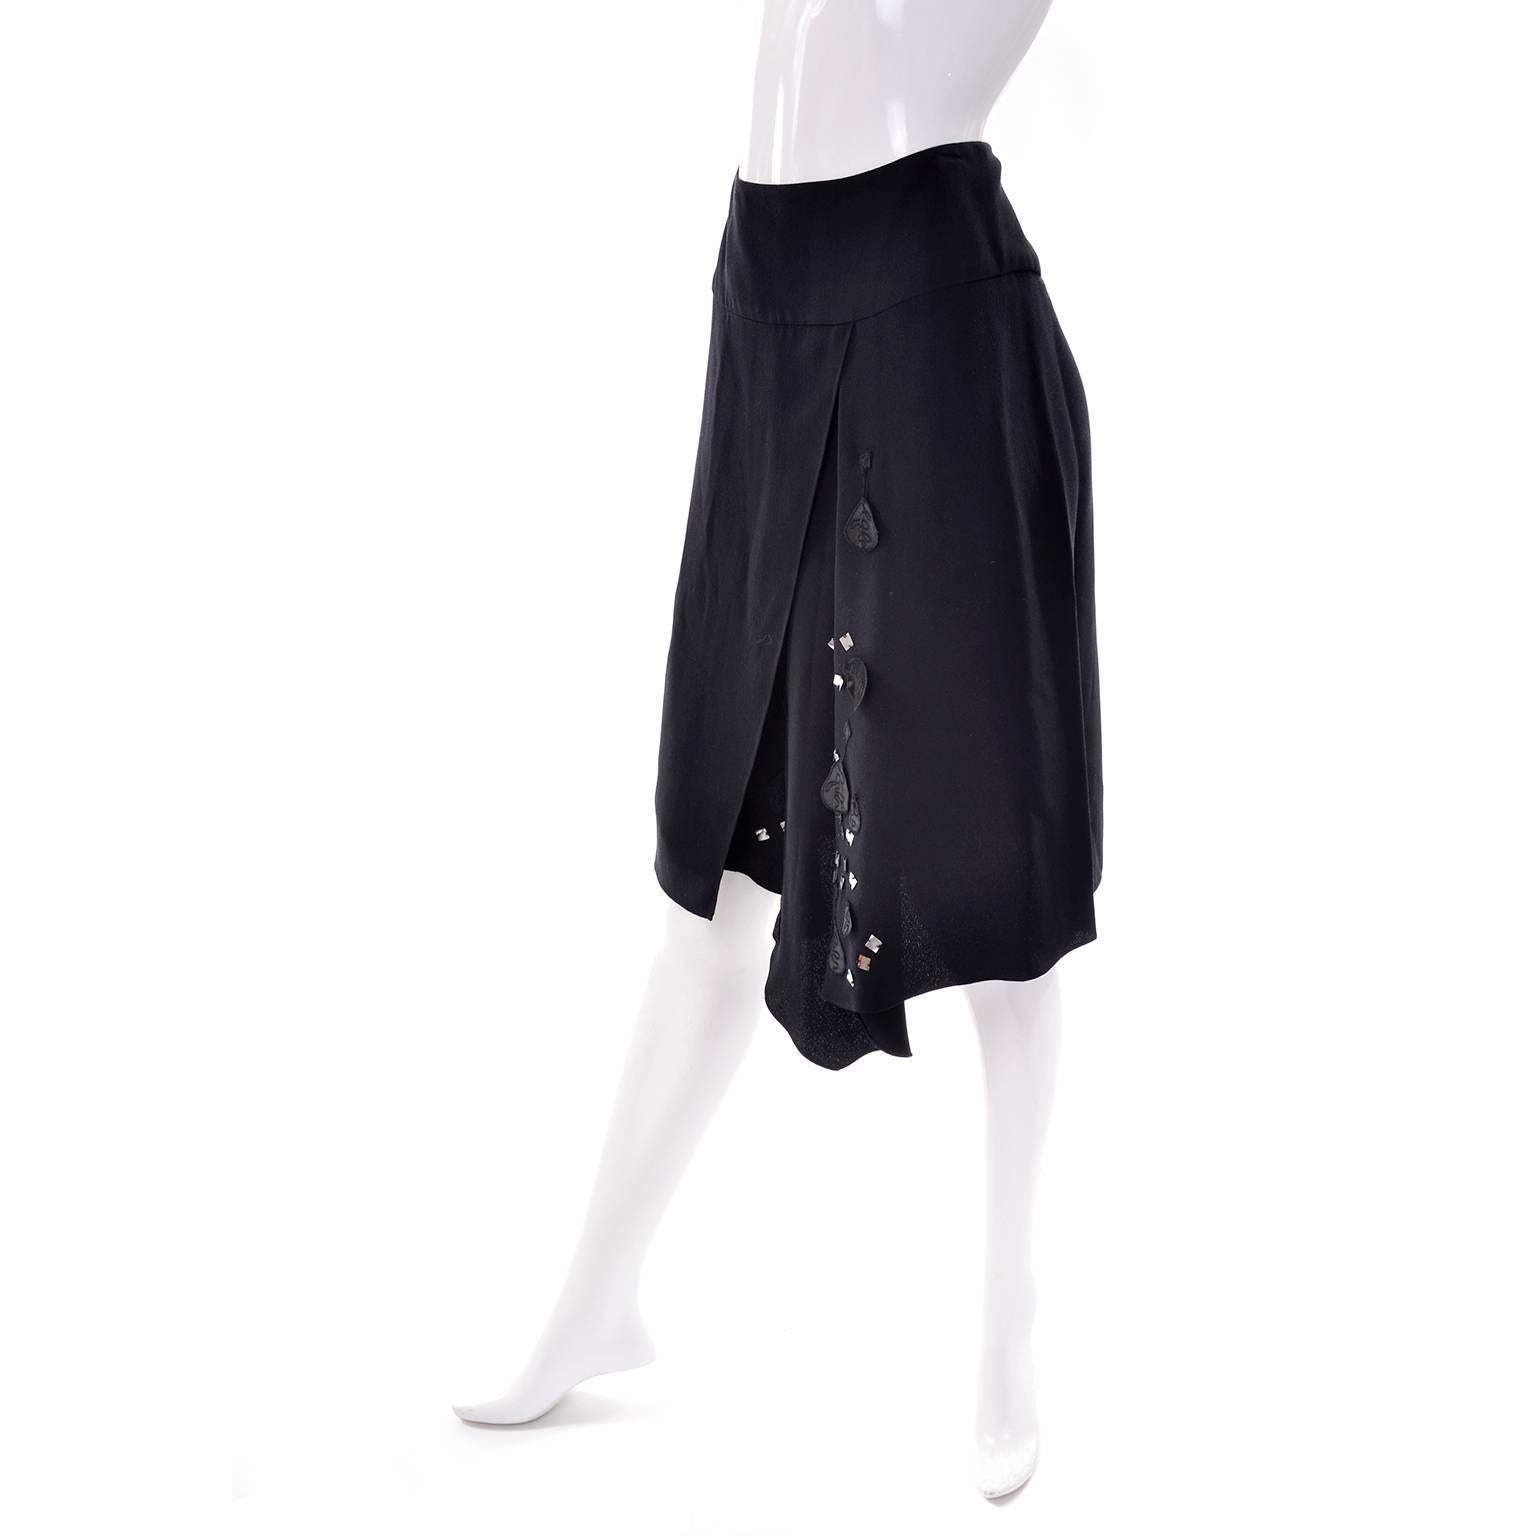 black rayon skirt